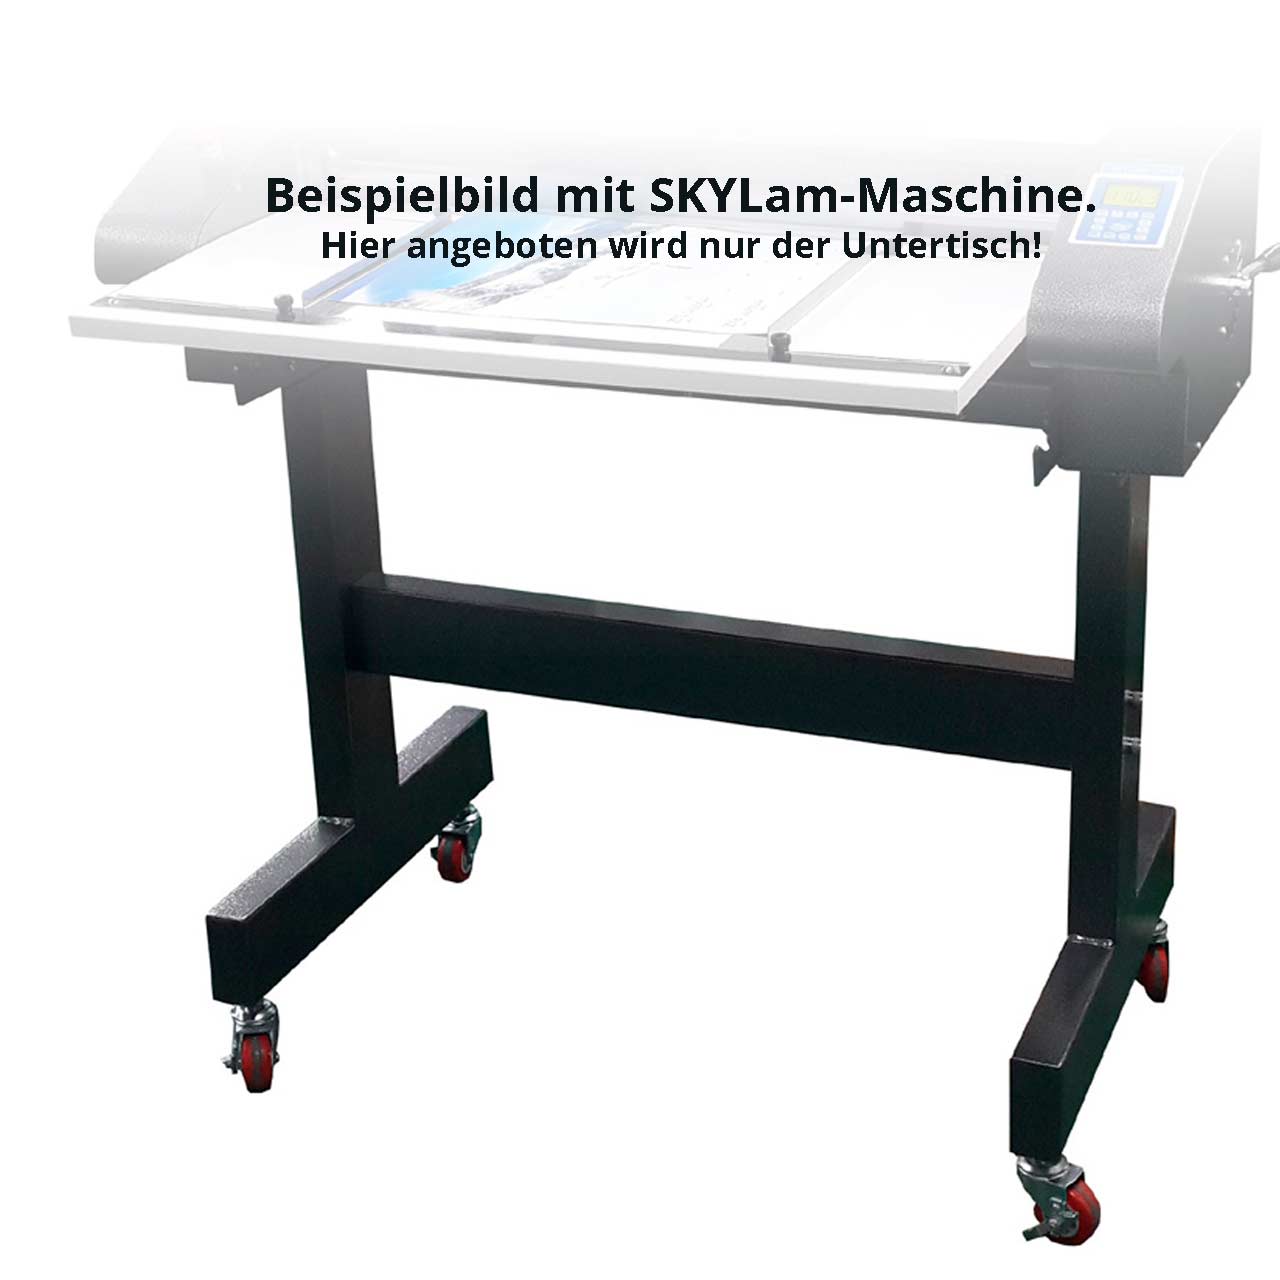 Arbeitstisch / Rollwagen / Untergestell / Untertisch für SKYLam 720 SUPER Rollenlaminator / Rollenlaminiergerät